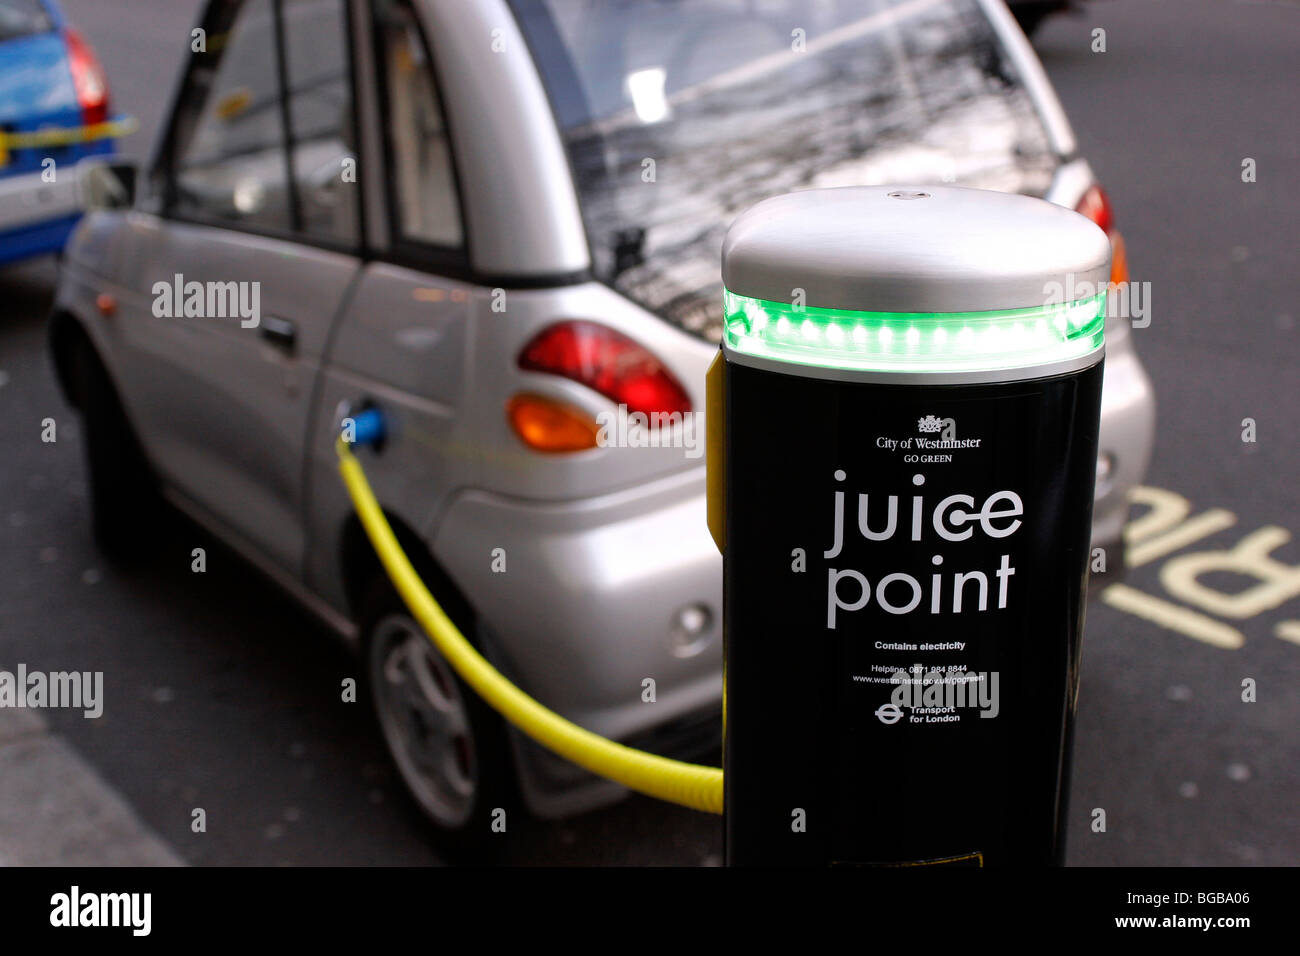 Inghilterra, London, Westminster, auto elettrica punto di succo di frutta in cui veicoli elettrici a ricaricare le batterie Foto Stock